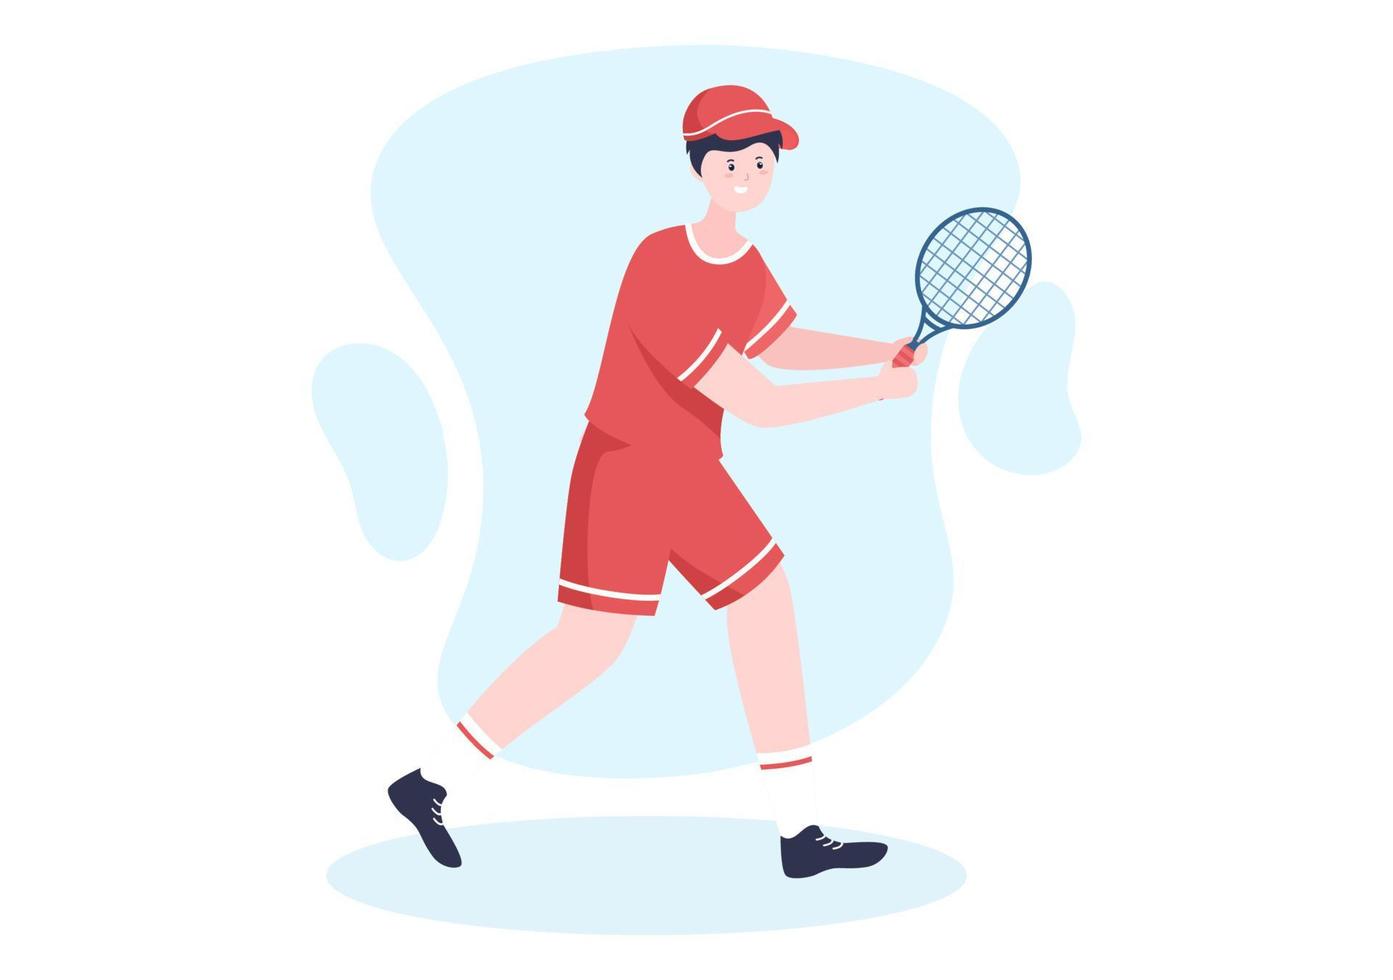 tennisser met racket in de hand en bal op de baan. mensen die sportwedstrijden doen in platte cartoonillustratie vector